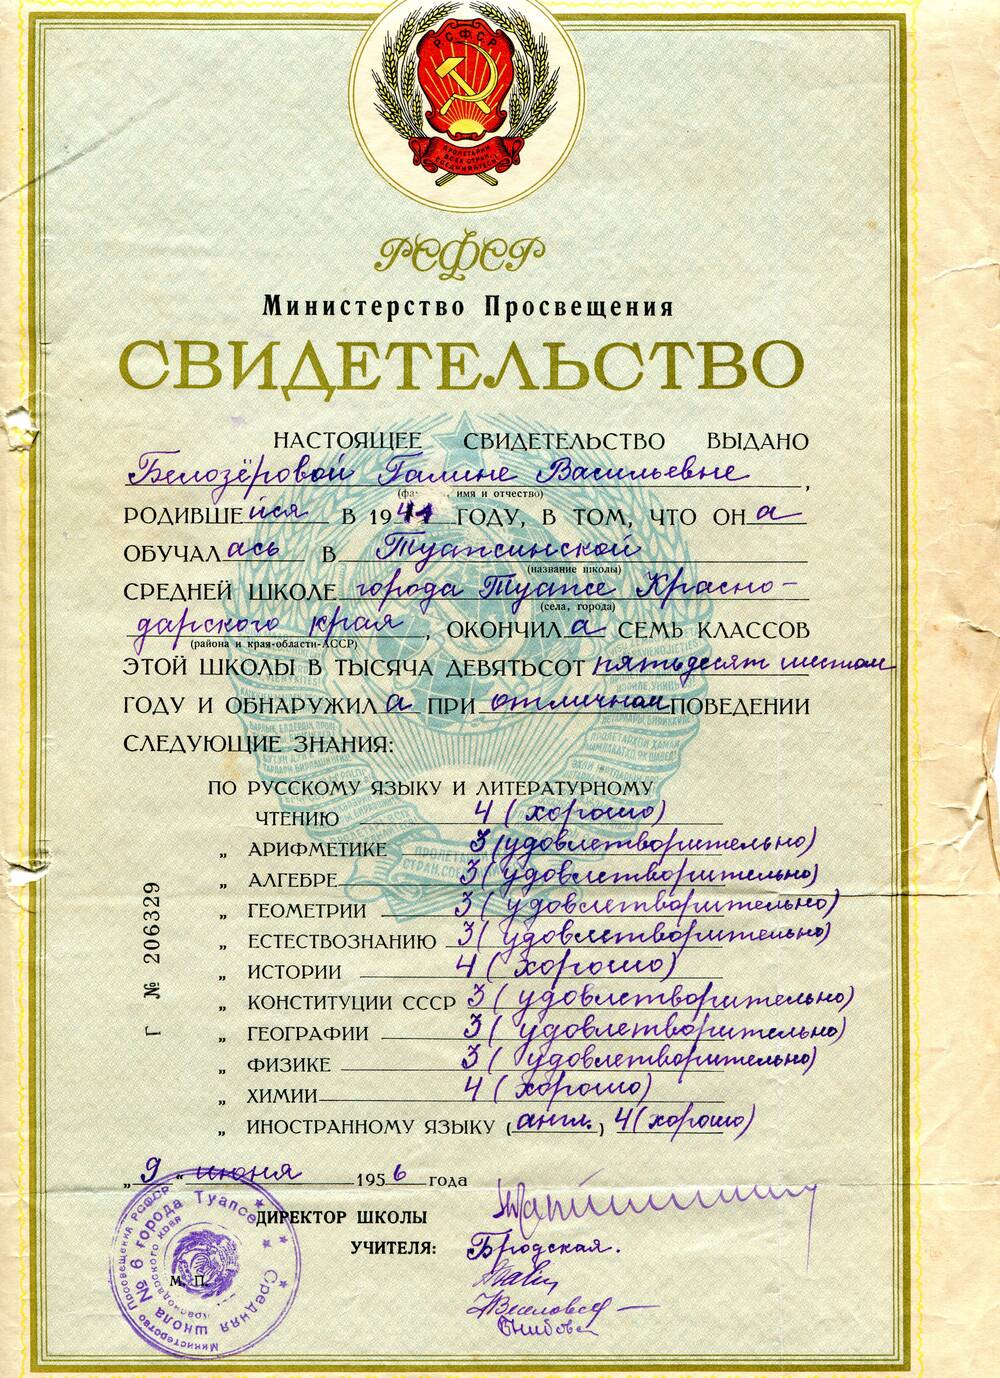 Свидетельство Г № 206329 выдано Белозёровой Галине Васильевне, родившейся в 1941 году, об окончании Туапсинской средней школы № 6 города Туапсе Краснодарского края.